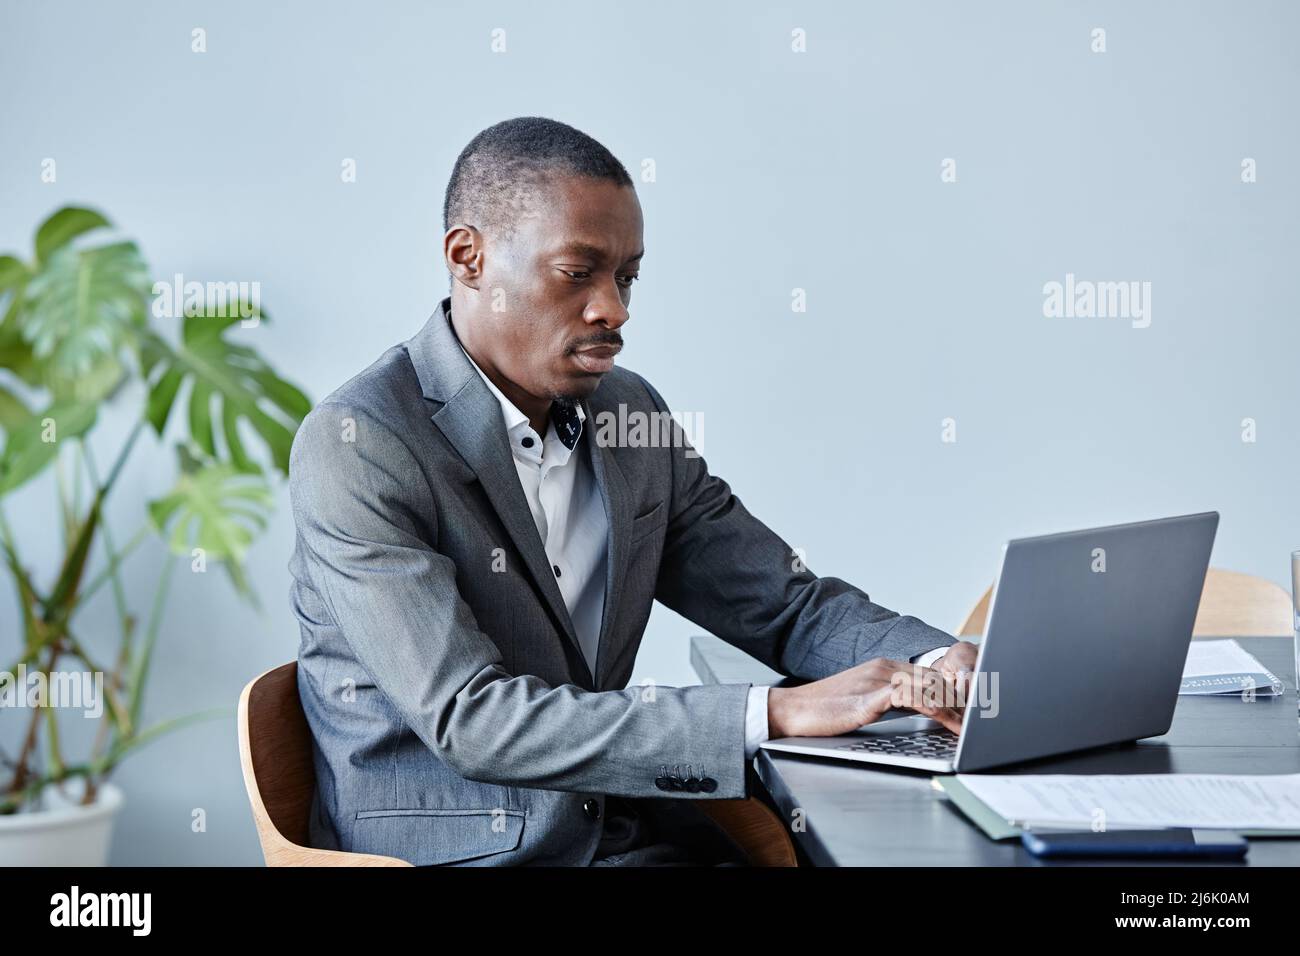 Minimales Porträt einer professionellen schwarzen Führungskraft, die einen Laptop verwendet, während sie am Arbeitsplatz im Büro gegen eine blaue Wand sitzt und einen Anzug trägt und Platz zum Kopieren verwendet Stockfoto